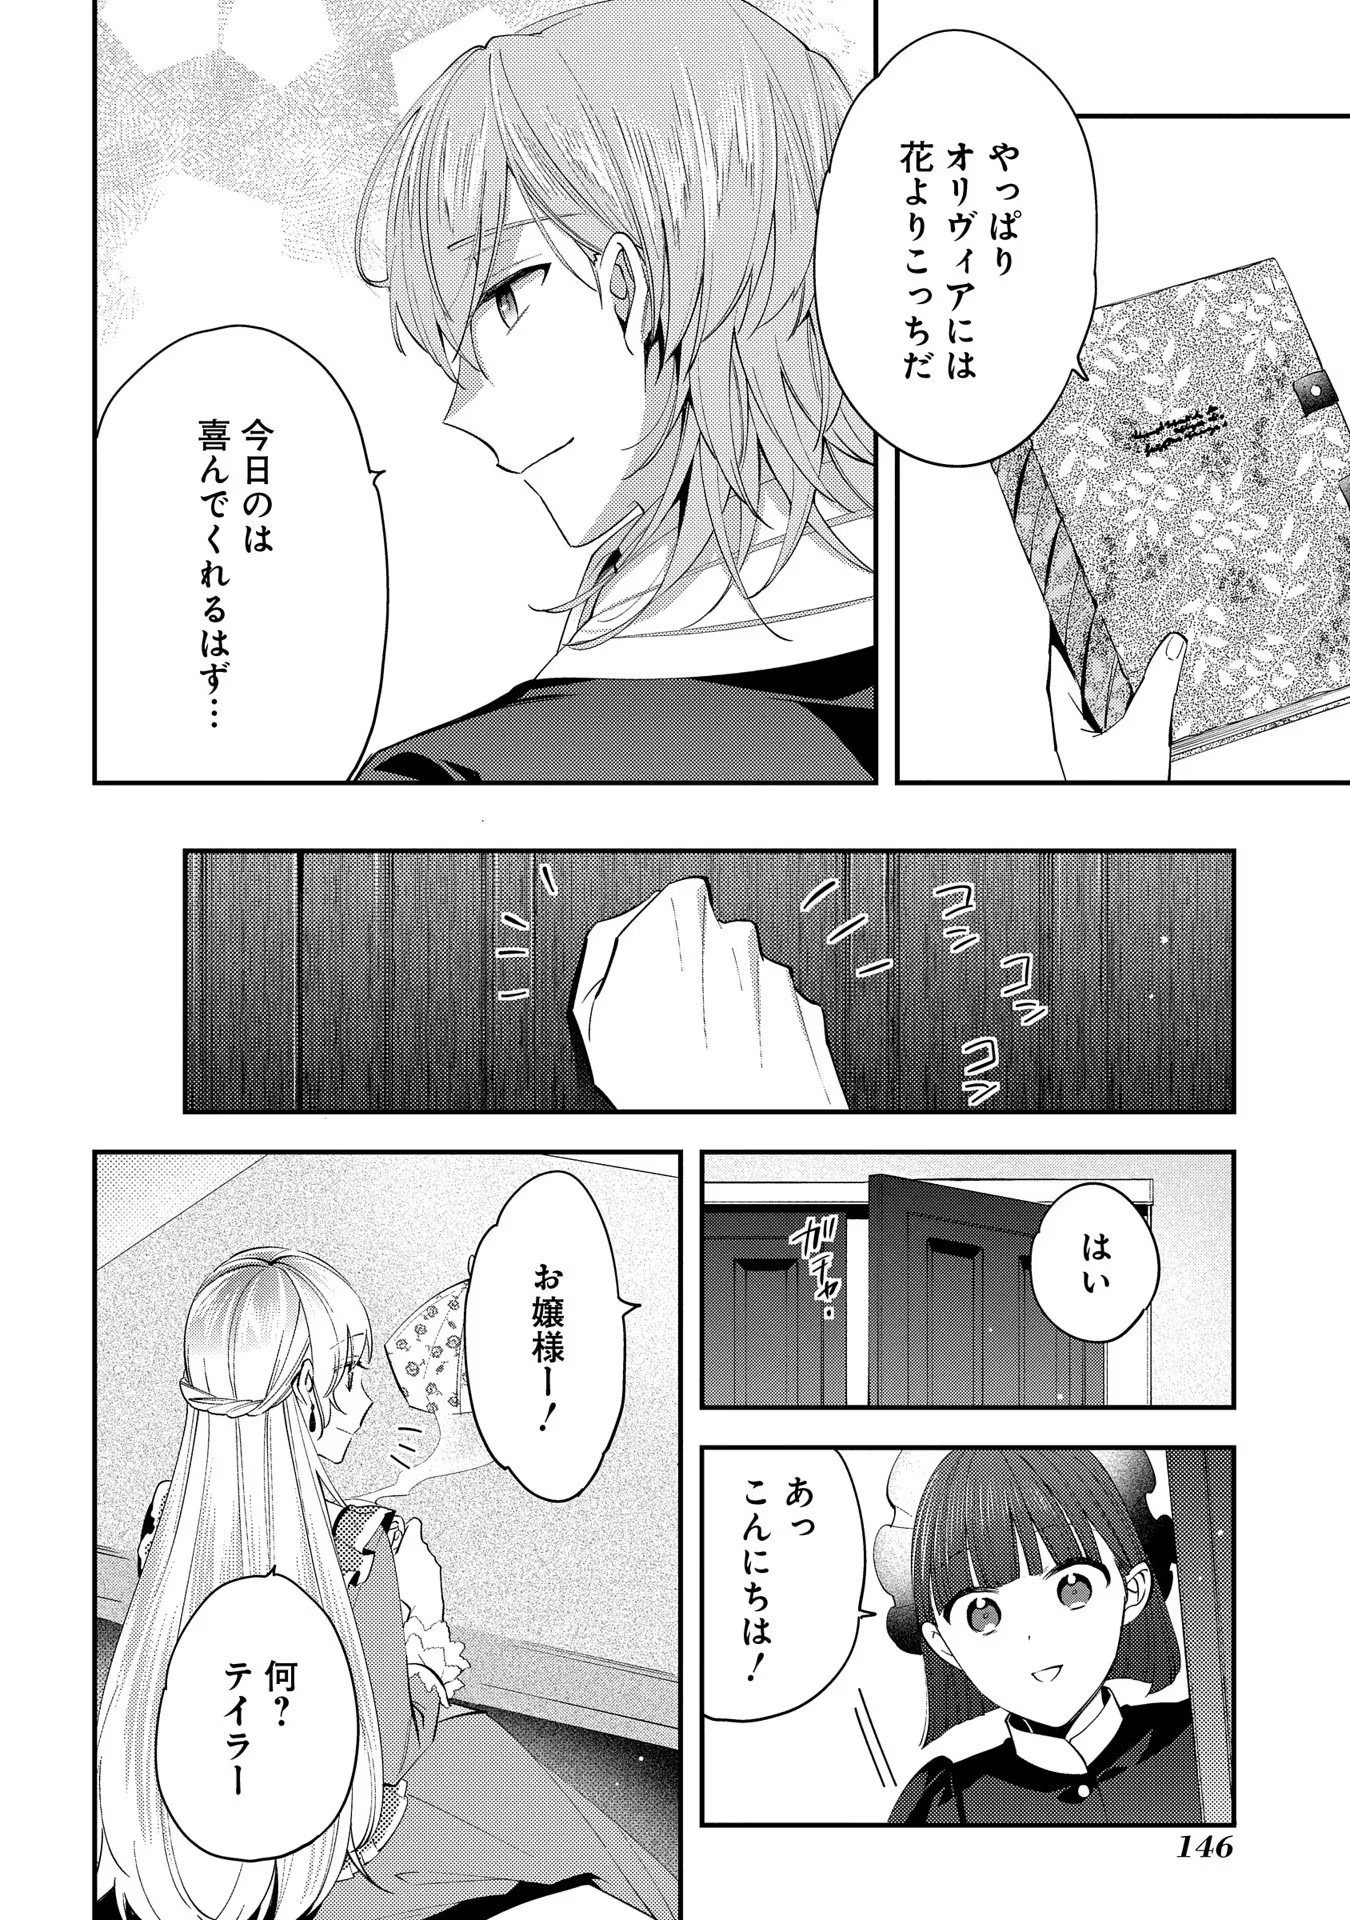 Outaishi ni Konyaku Hakisareta no de, Mou Baka no Furi wa Yameyou to Omoimasu - Chapter 5 - Page 8